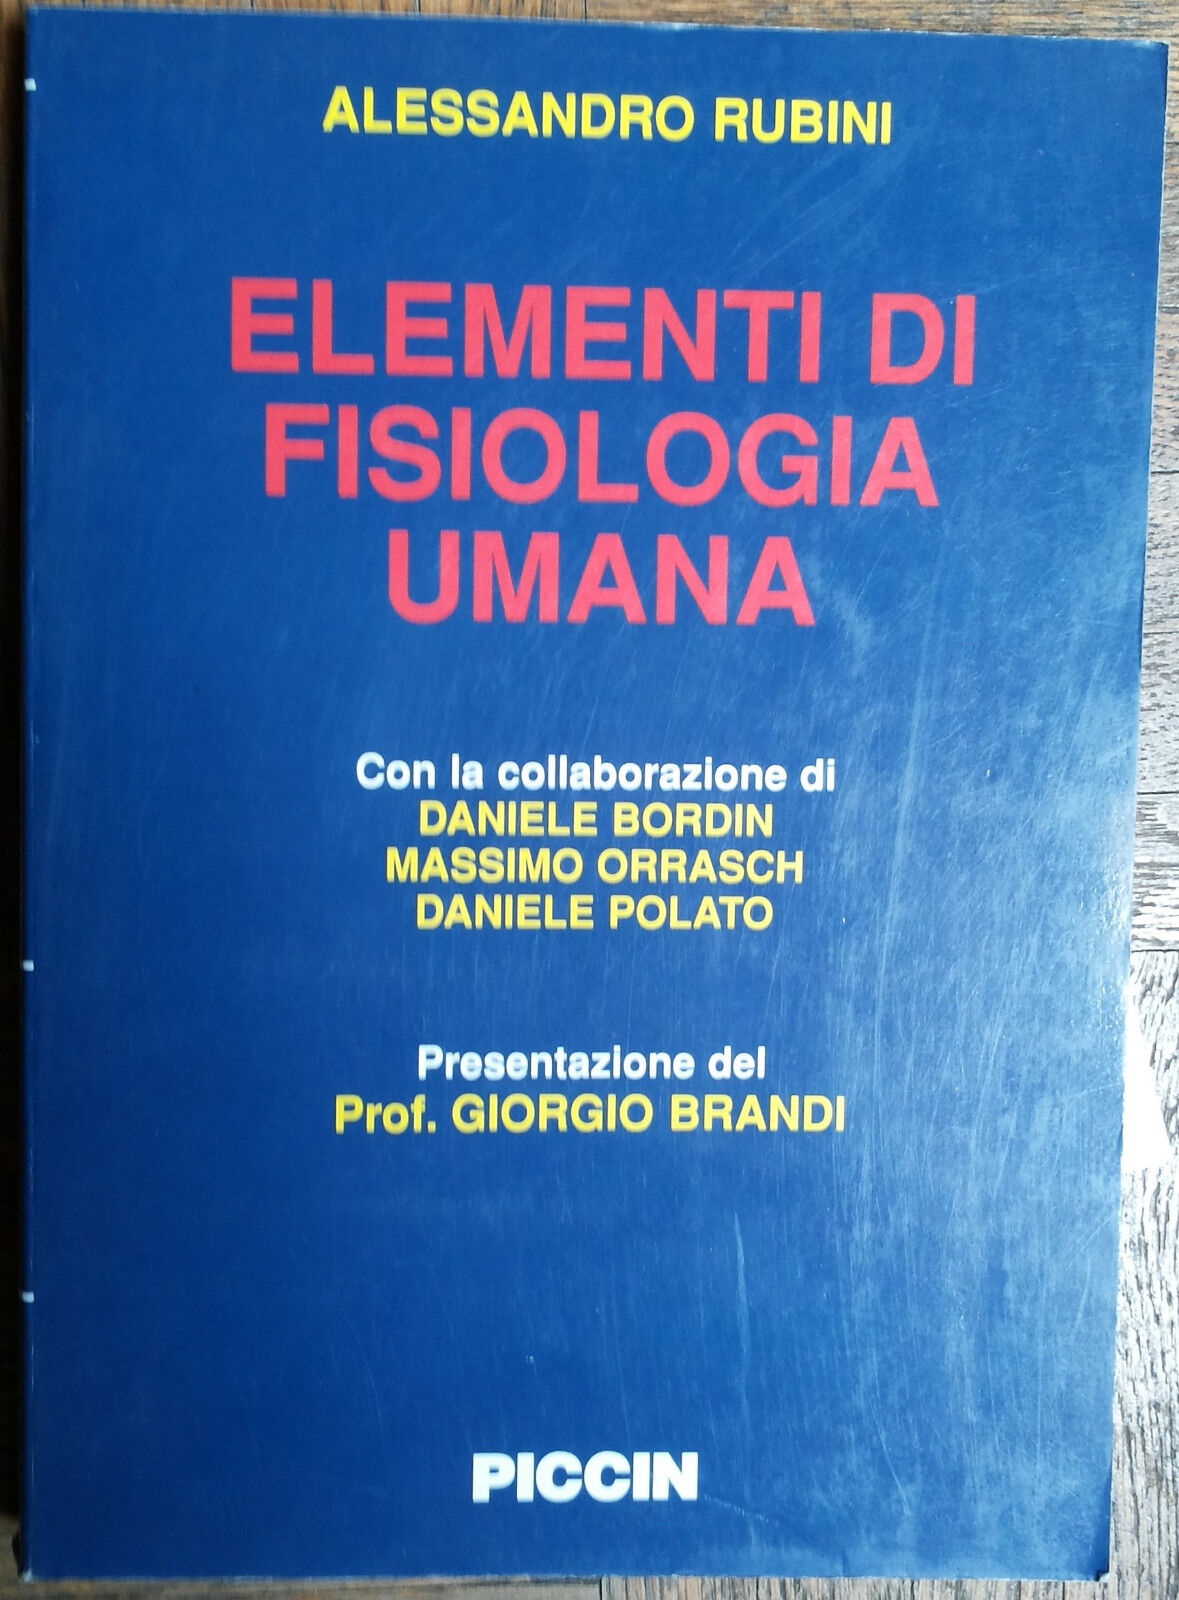 Elementi di fisiologia umana - Rubini - Piccin,2002 - R 